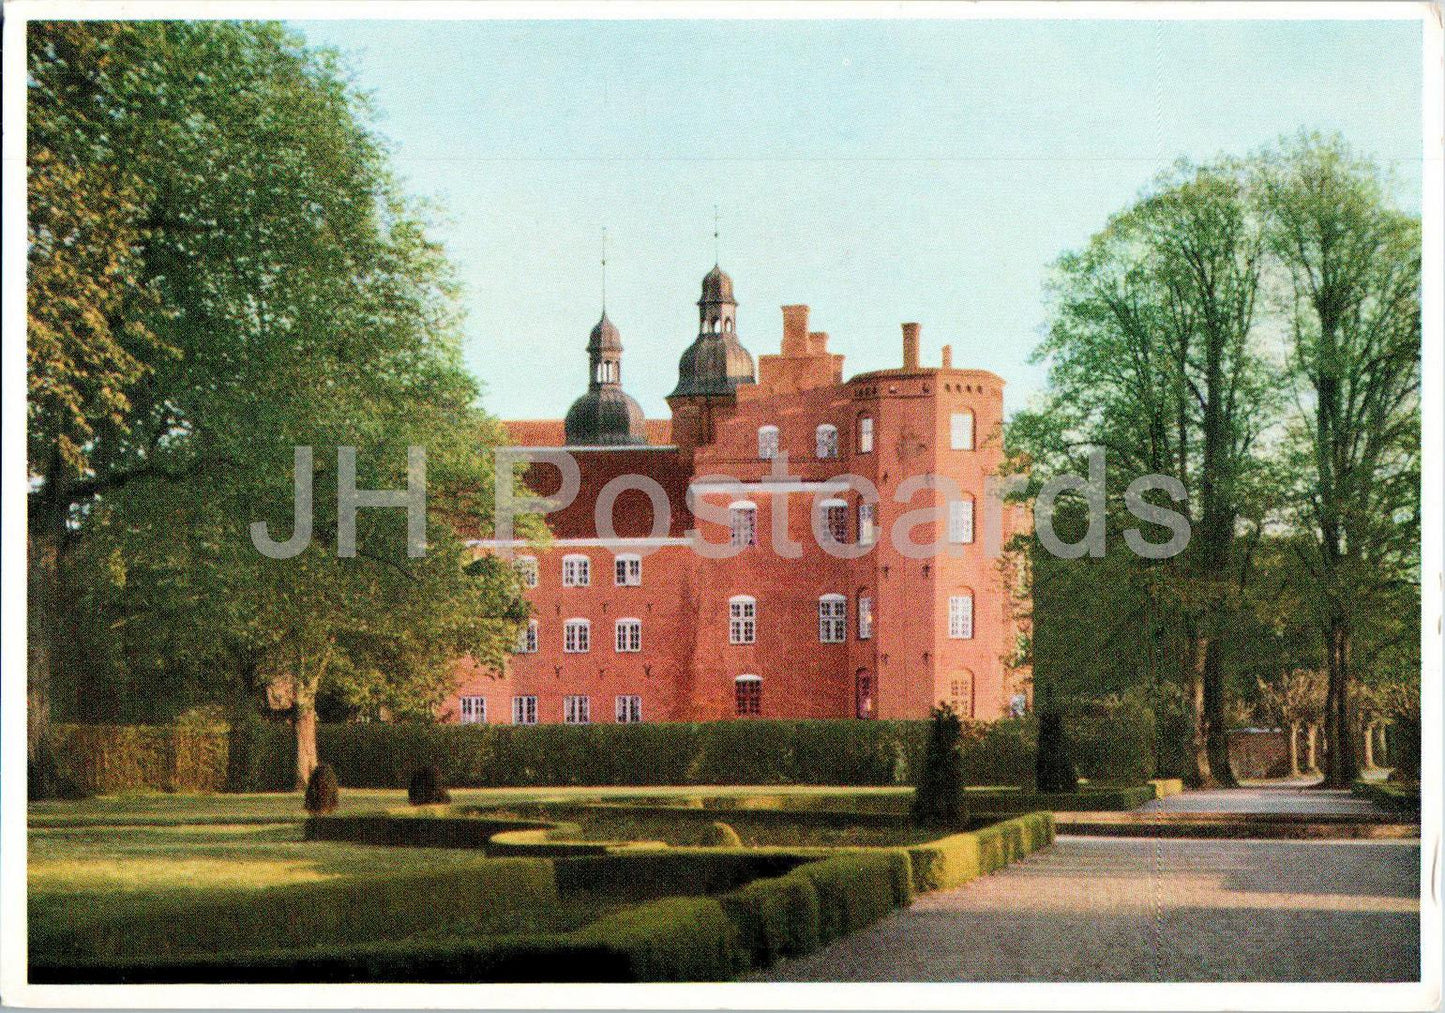 Gammel Estrup - Jyllands Herregardsmuseum - Set fra parken - Jutland Manor Museum - view from park - Denmark - unused